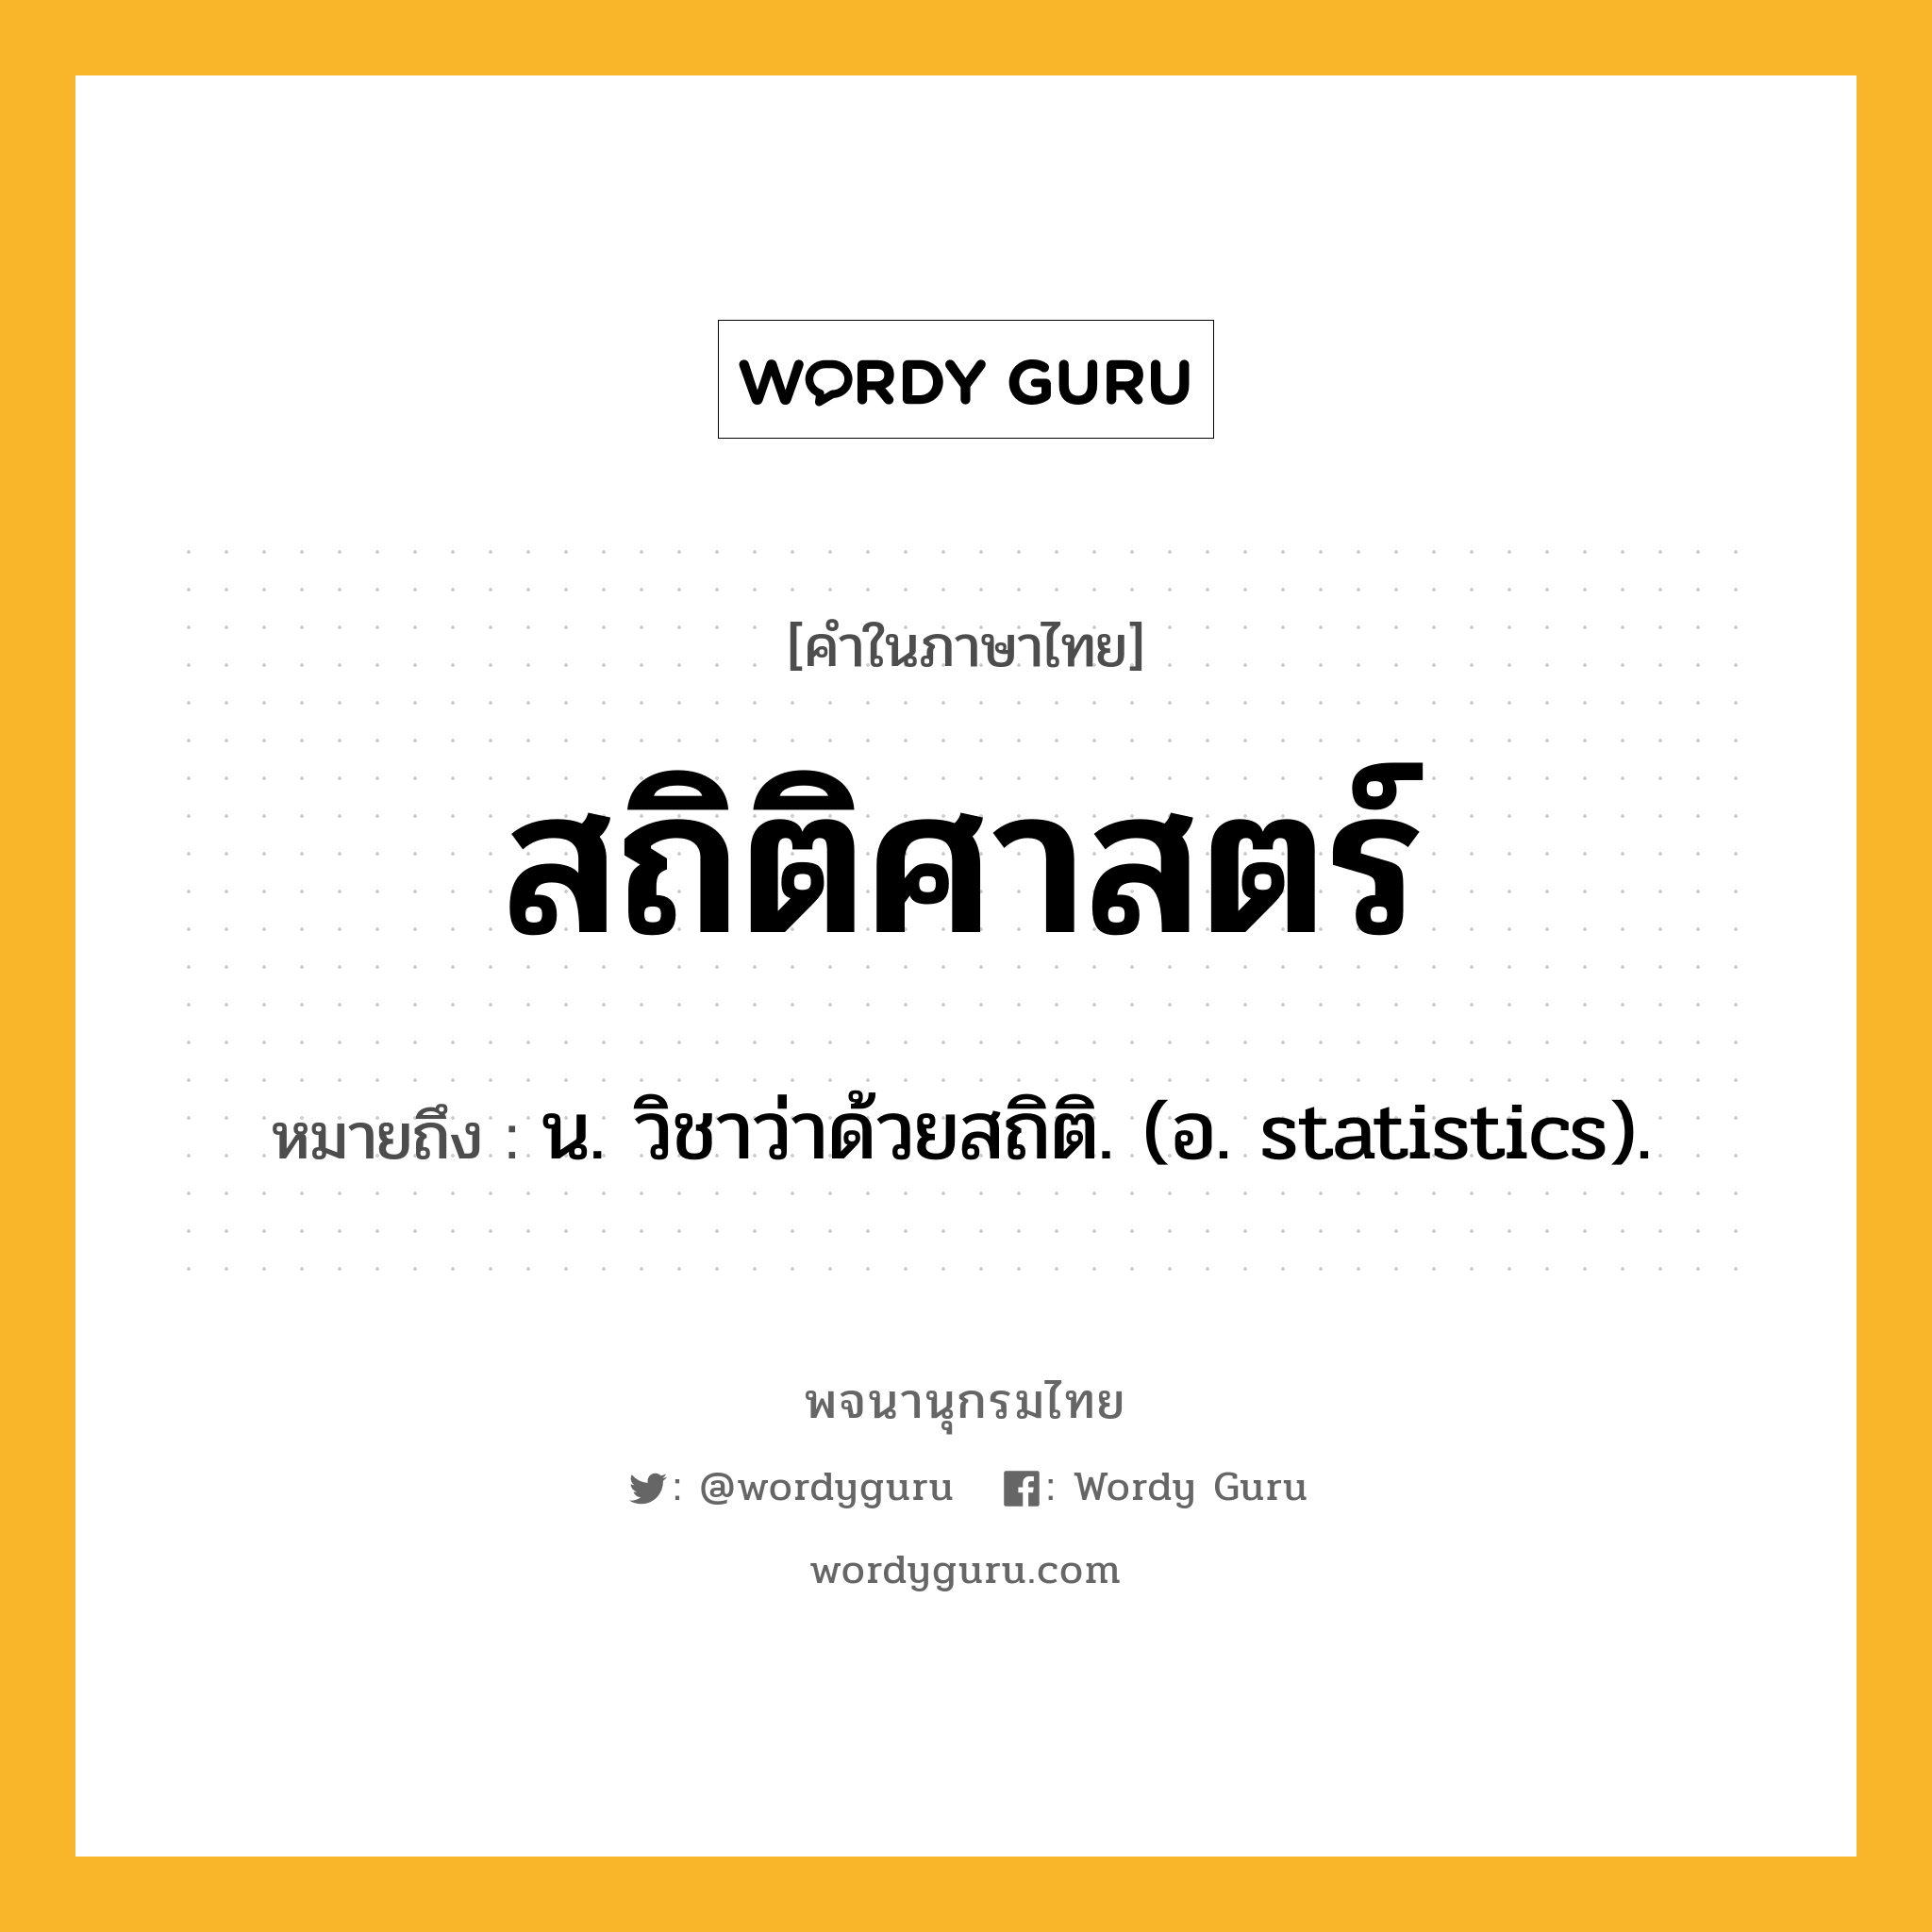 สถิติศาสตร์ หมายถึงอะไร?, คำในภาษาไทย สถิติศาสตร์ หมายถึง น. วิชาว่าด้วยสถิติ. (อ. statistics).